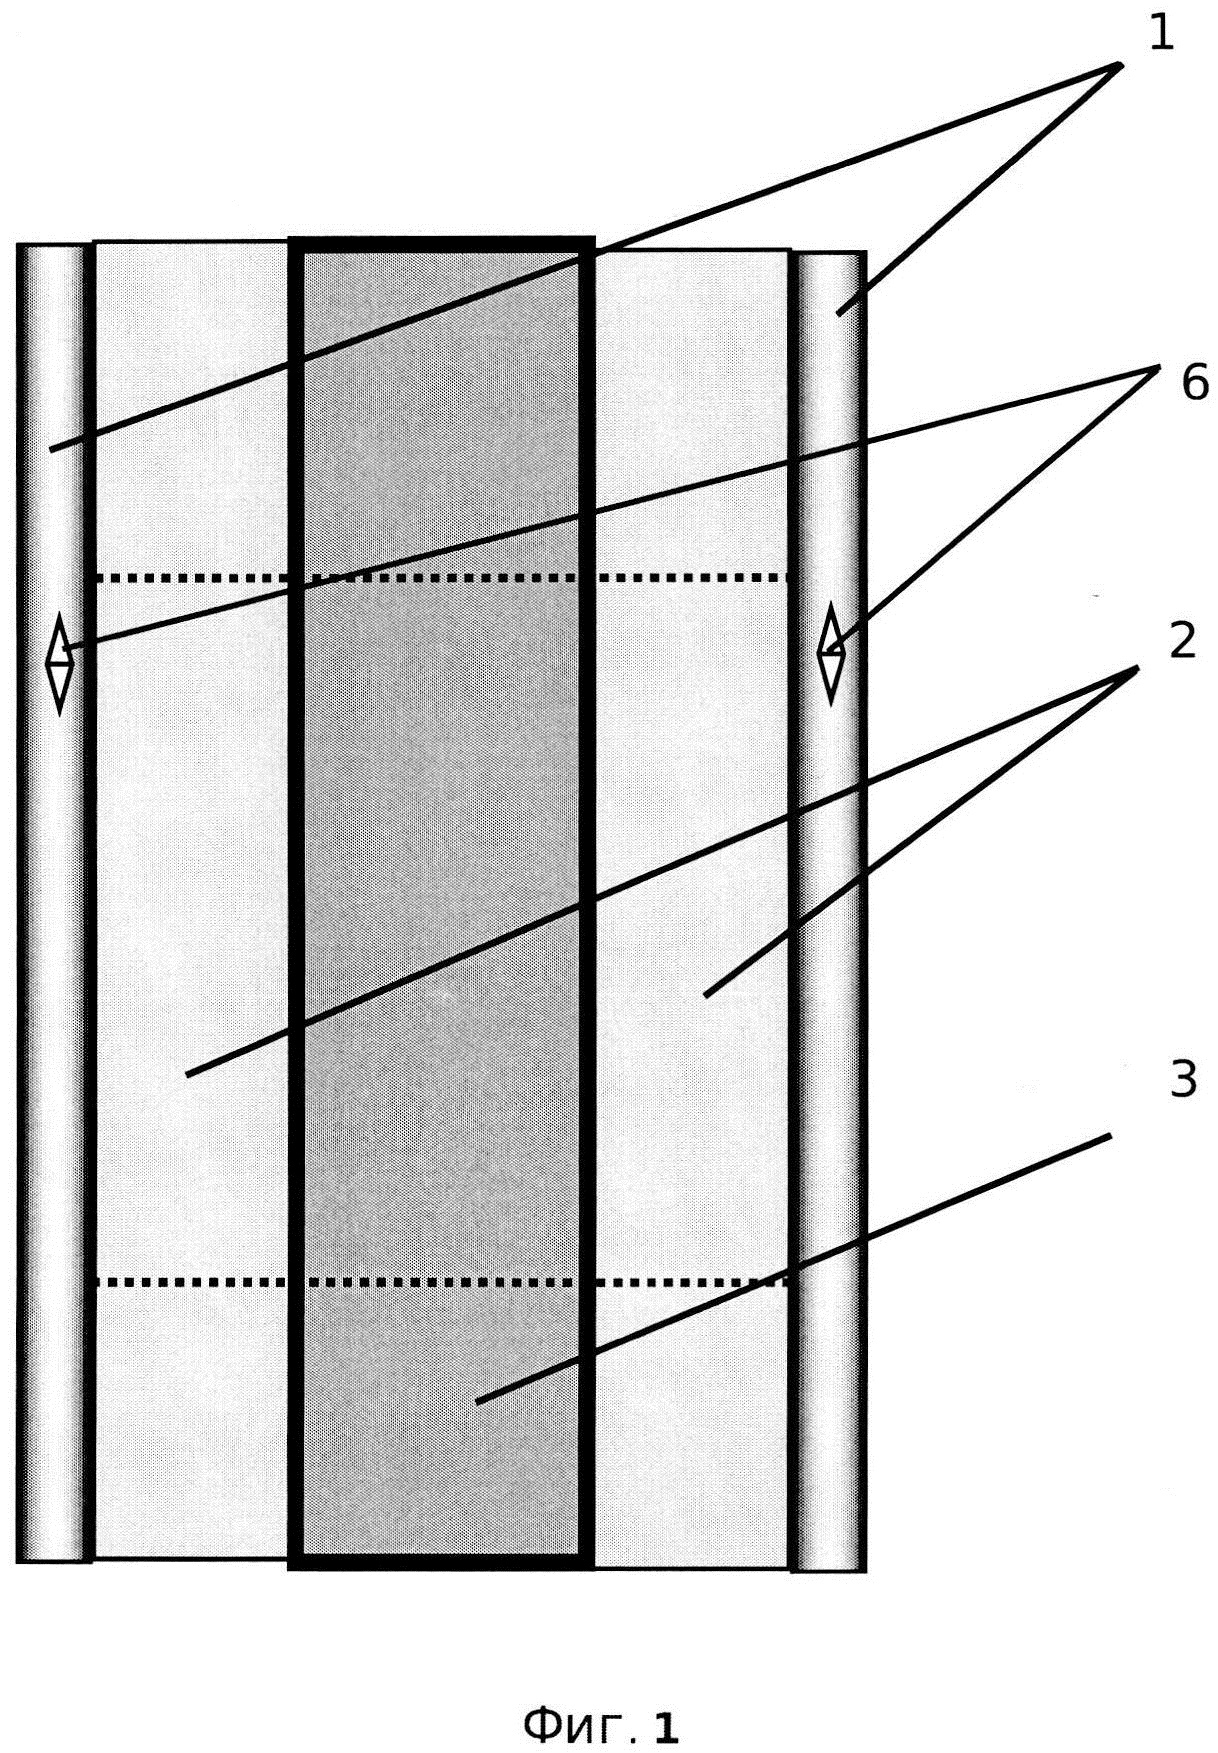 Несъёмная опалубка для монолитного бетона или железобетона из специального неорганического стекла (варианты)